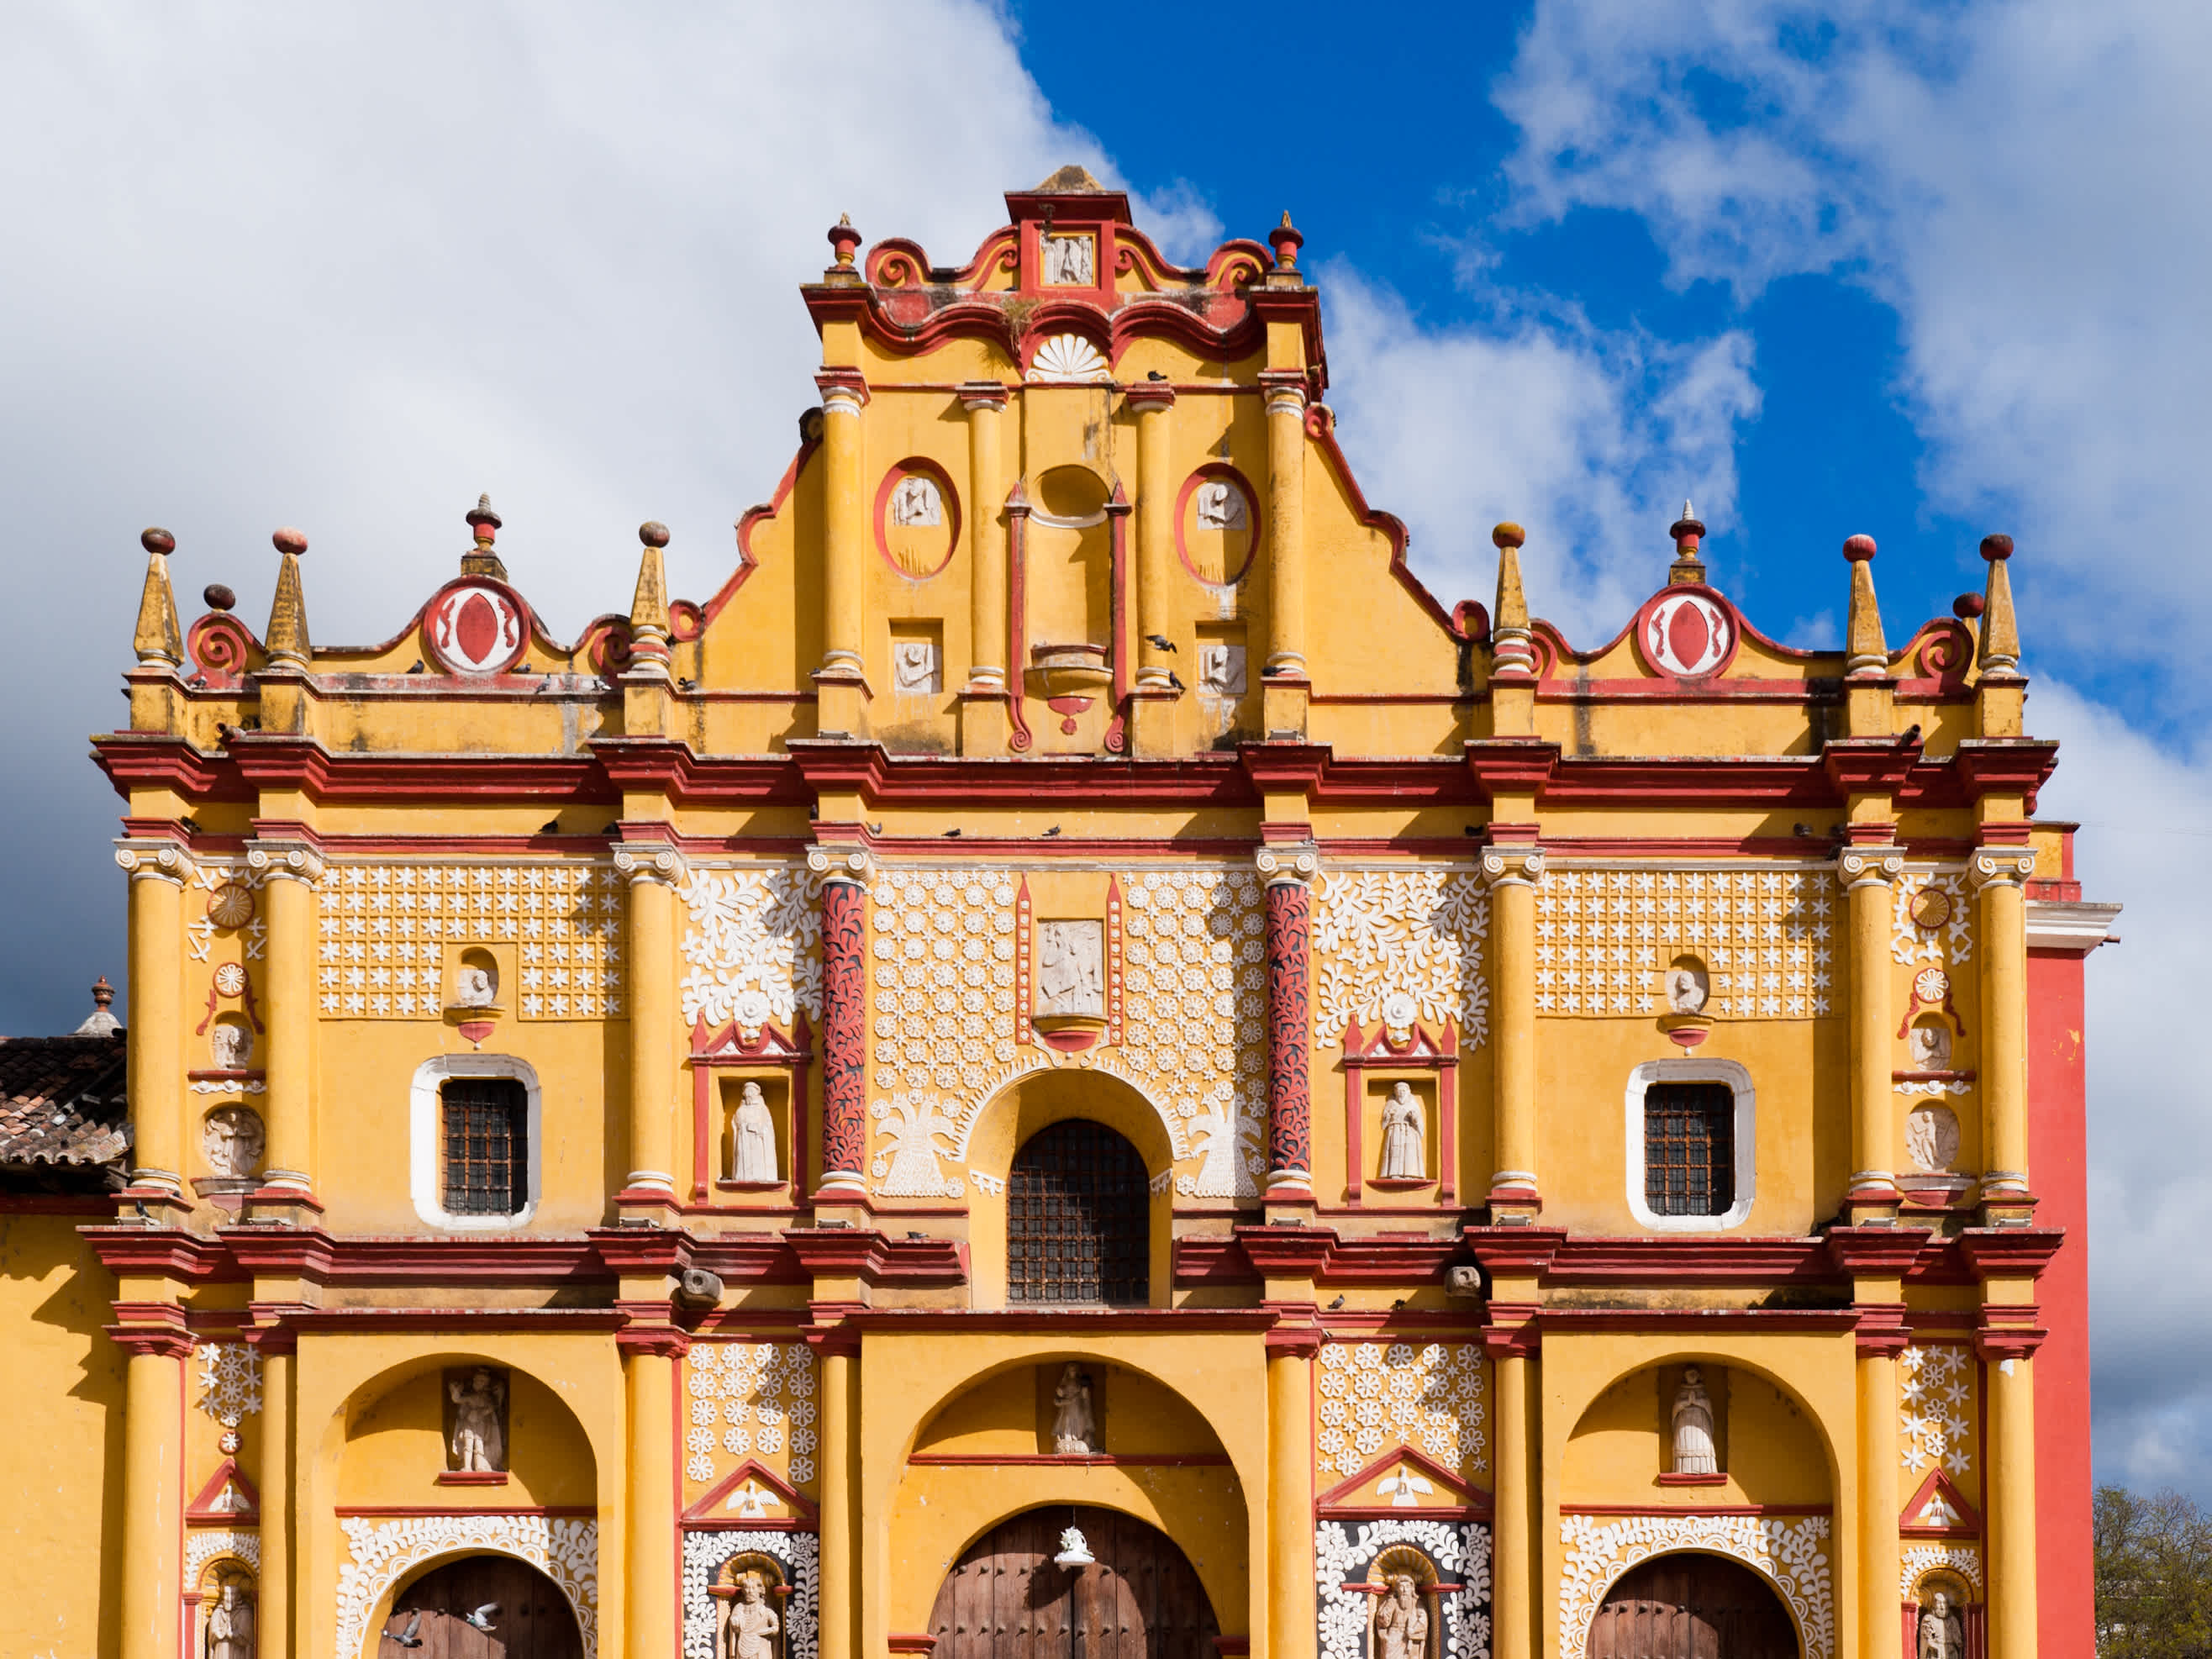 Der Tempel von Santo Domingo in San Cristobal de las Casas, einer farbenfrohen Stadt in der Region Chiapas in Mexiko